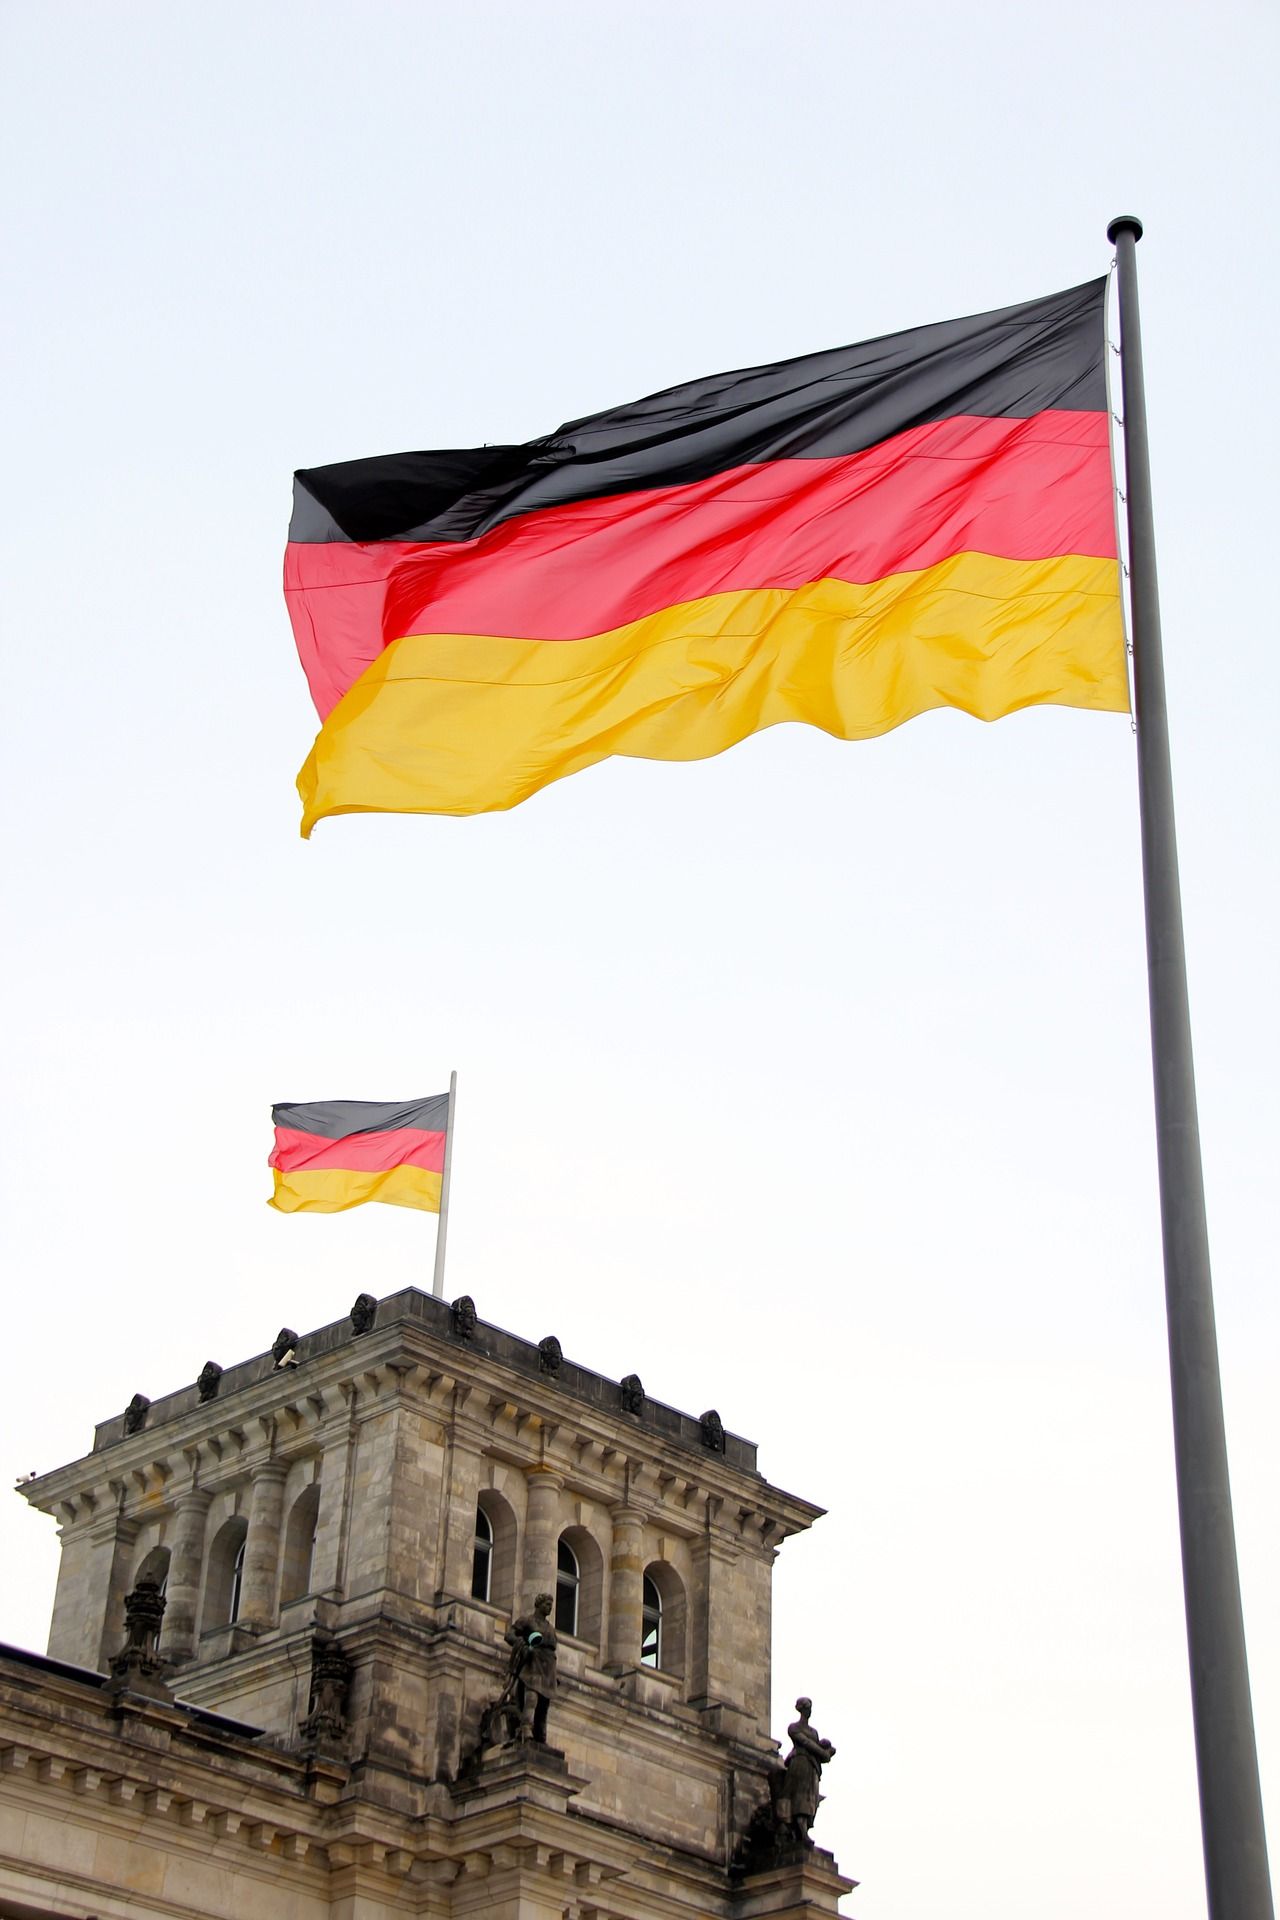 تأمين في ألمانيا تعرف على جميع أنواعها الإلزامية وغير الإجبارية بالتفصيل | عرب ألمانيا